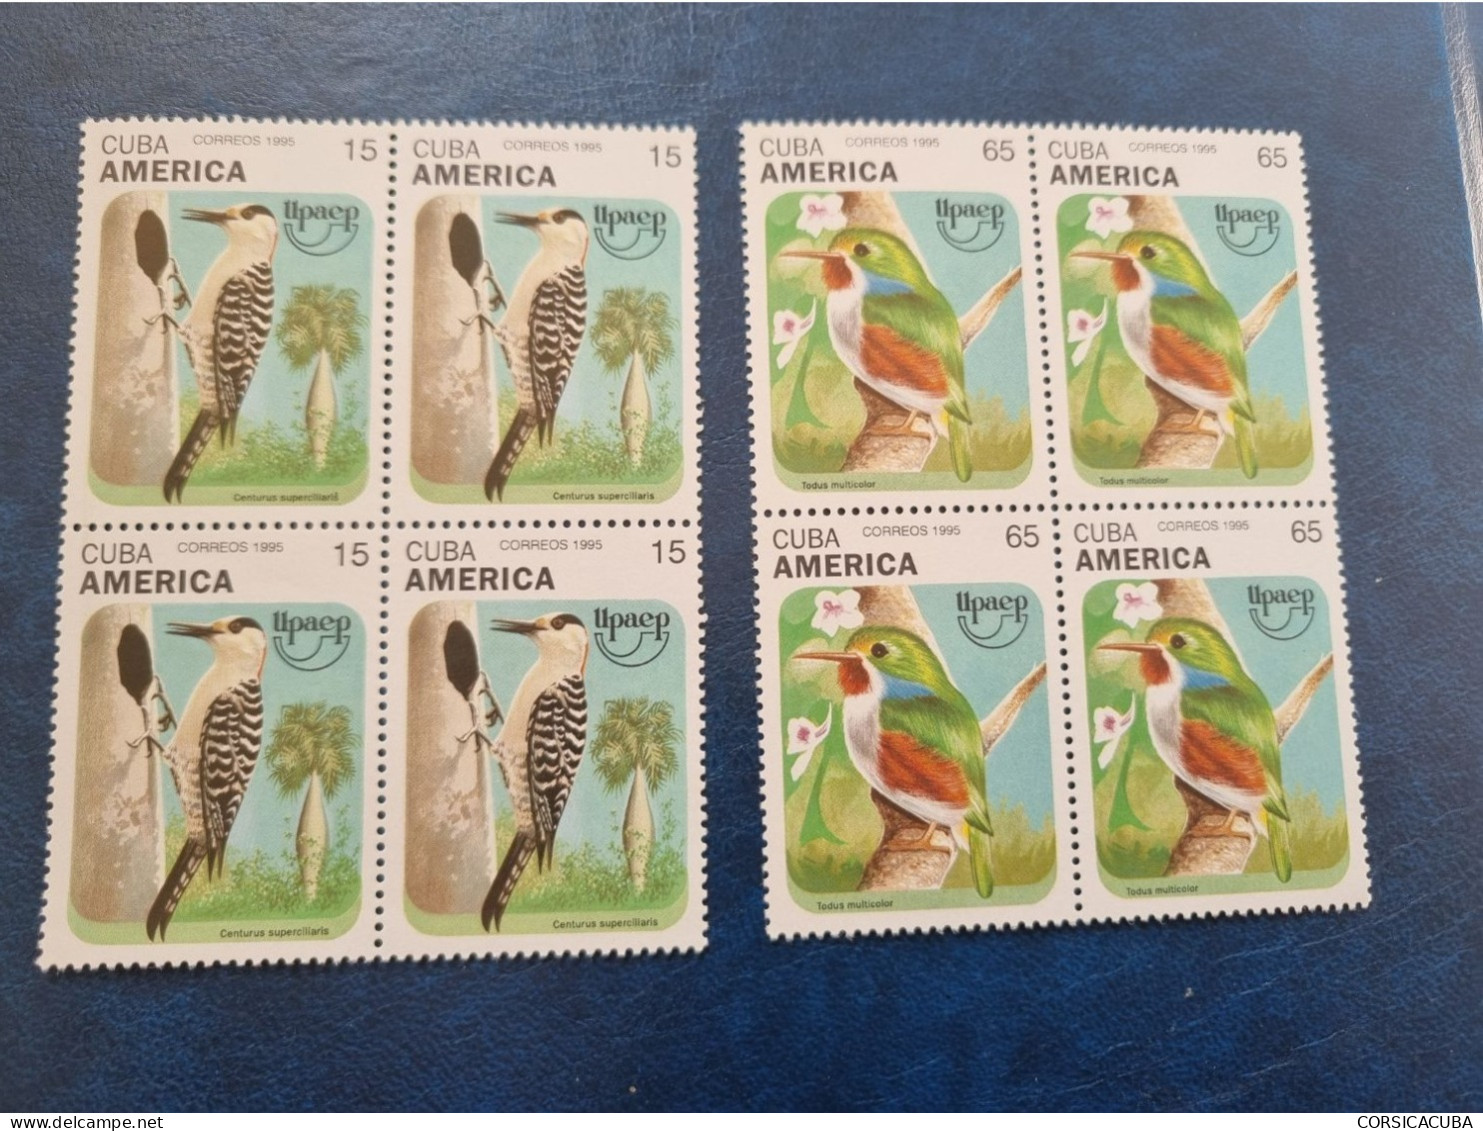 CUBA  NEUF  1995   AMERICA  UPAEP  //  PARFAIT  ETAT  //  1er  CHOIX  // Bloc De 4 - Unused Stamps